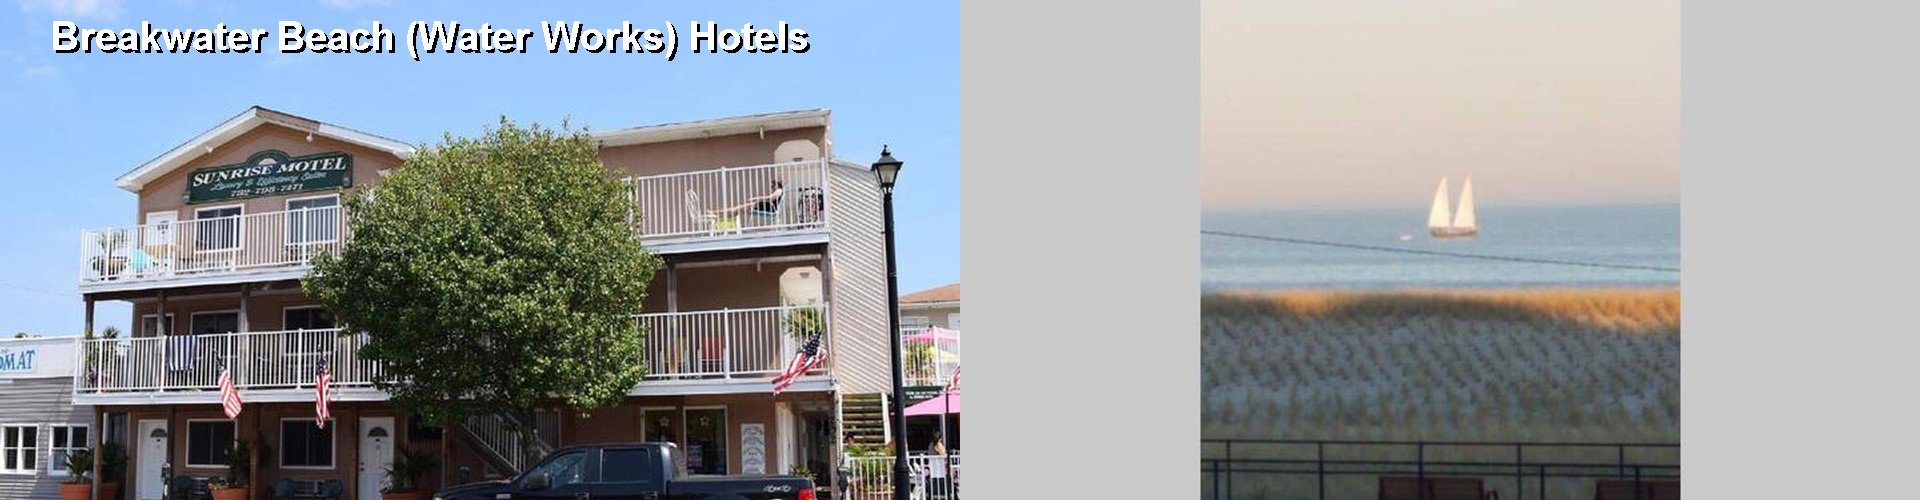 3 Best Hotels near Breakwater Beach (Water Works)